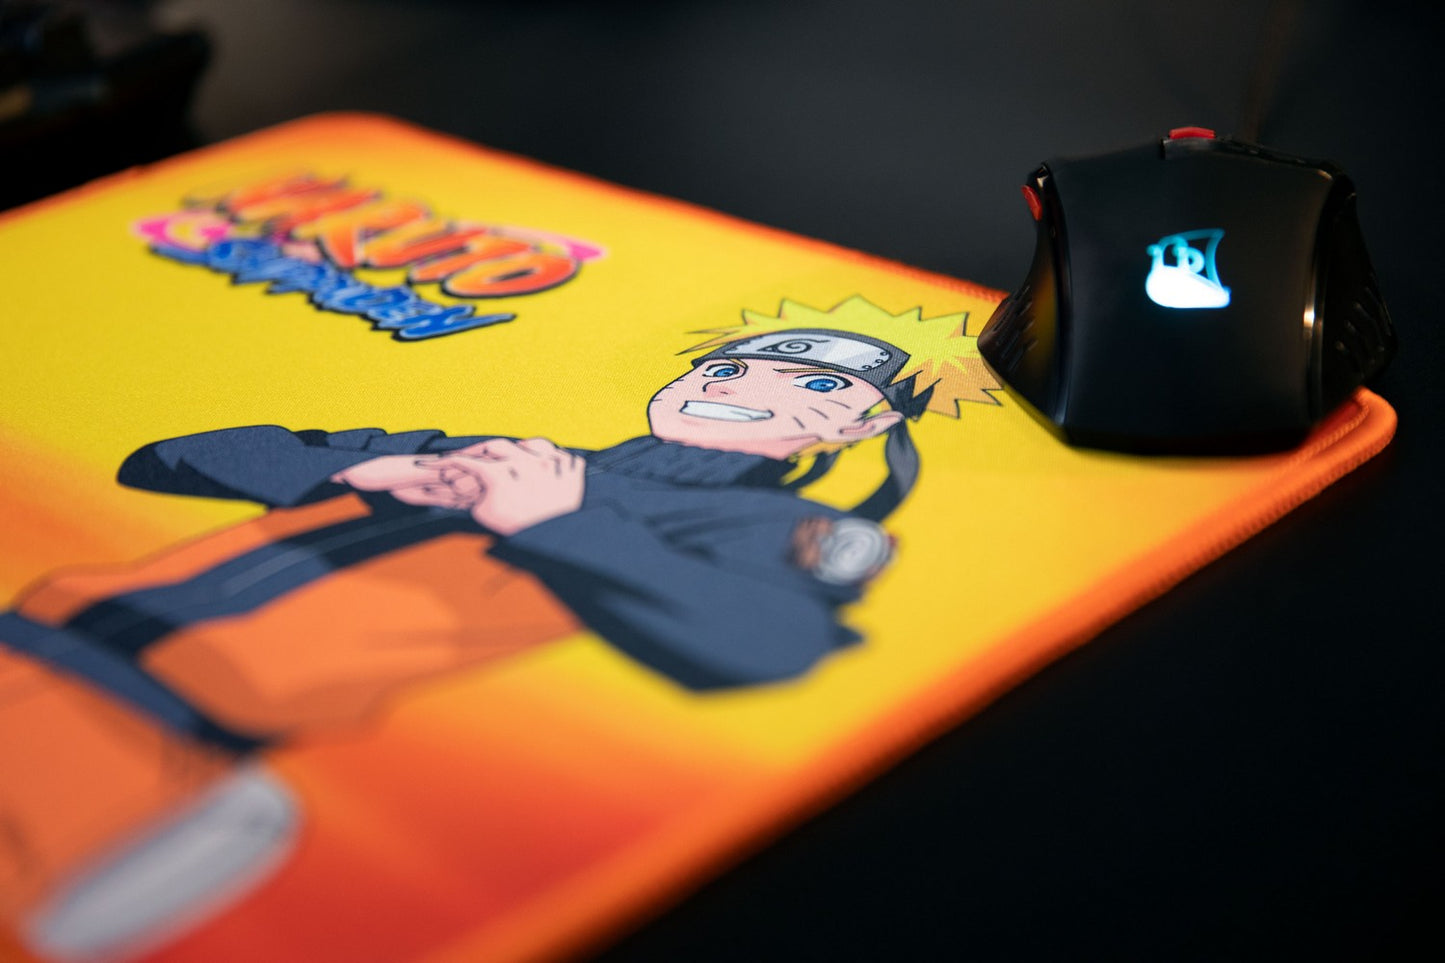 Naruto Shippuden: Naruto Orange Mouse Mat